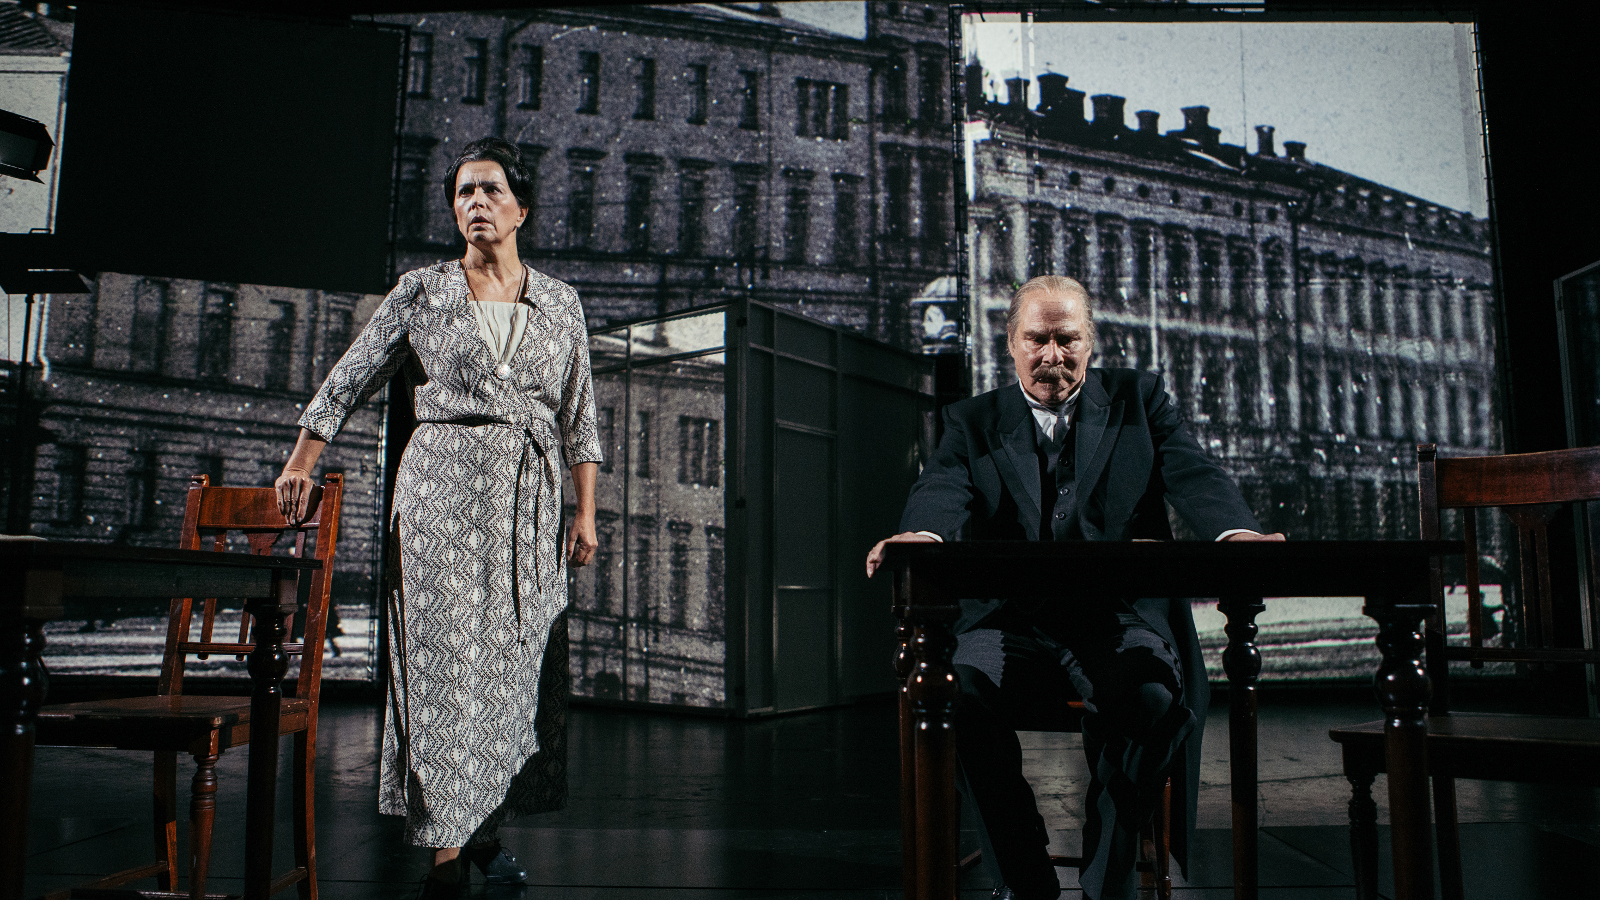 Kuvassa on taustalla presidentin linna ja etualalla vasemmalla on Kristiina Halttu Esterinä harmaa kuvioisessa puvussa seisomassa ja oikealla Vesa Vierikko istumassa.